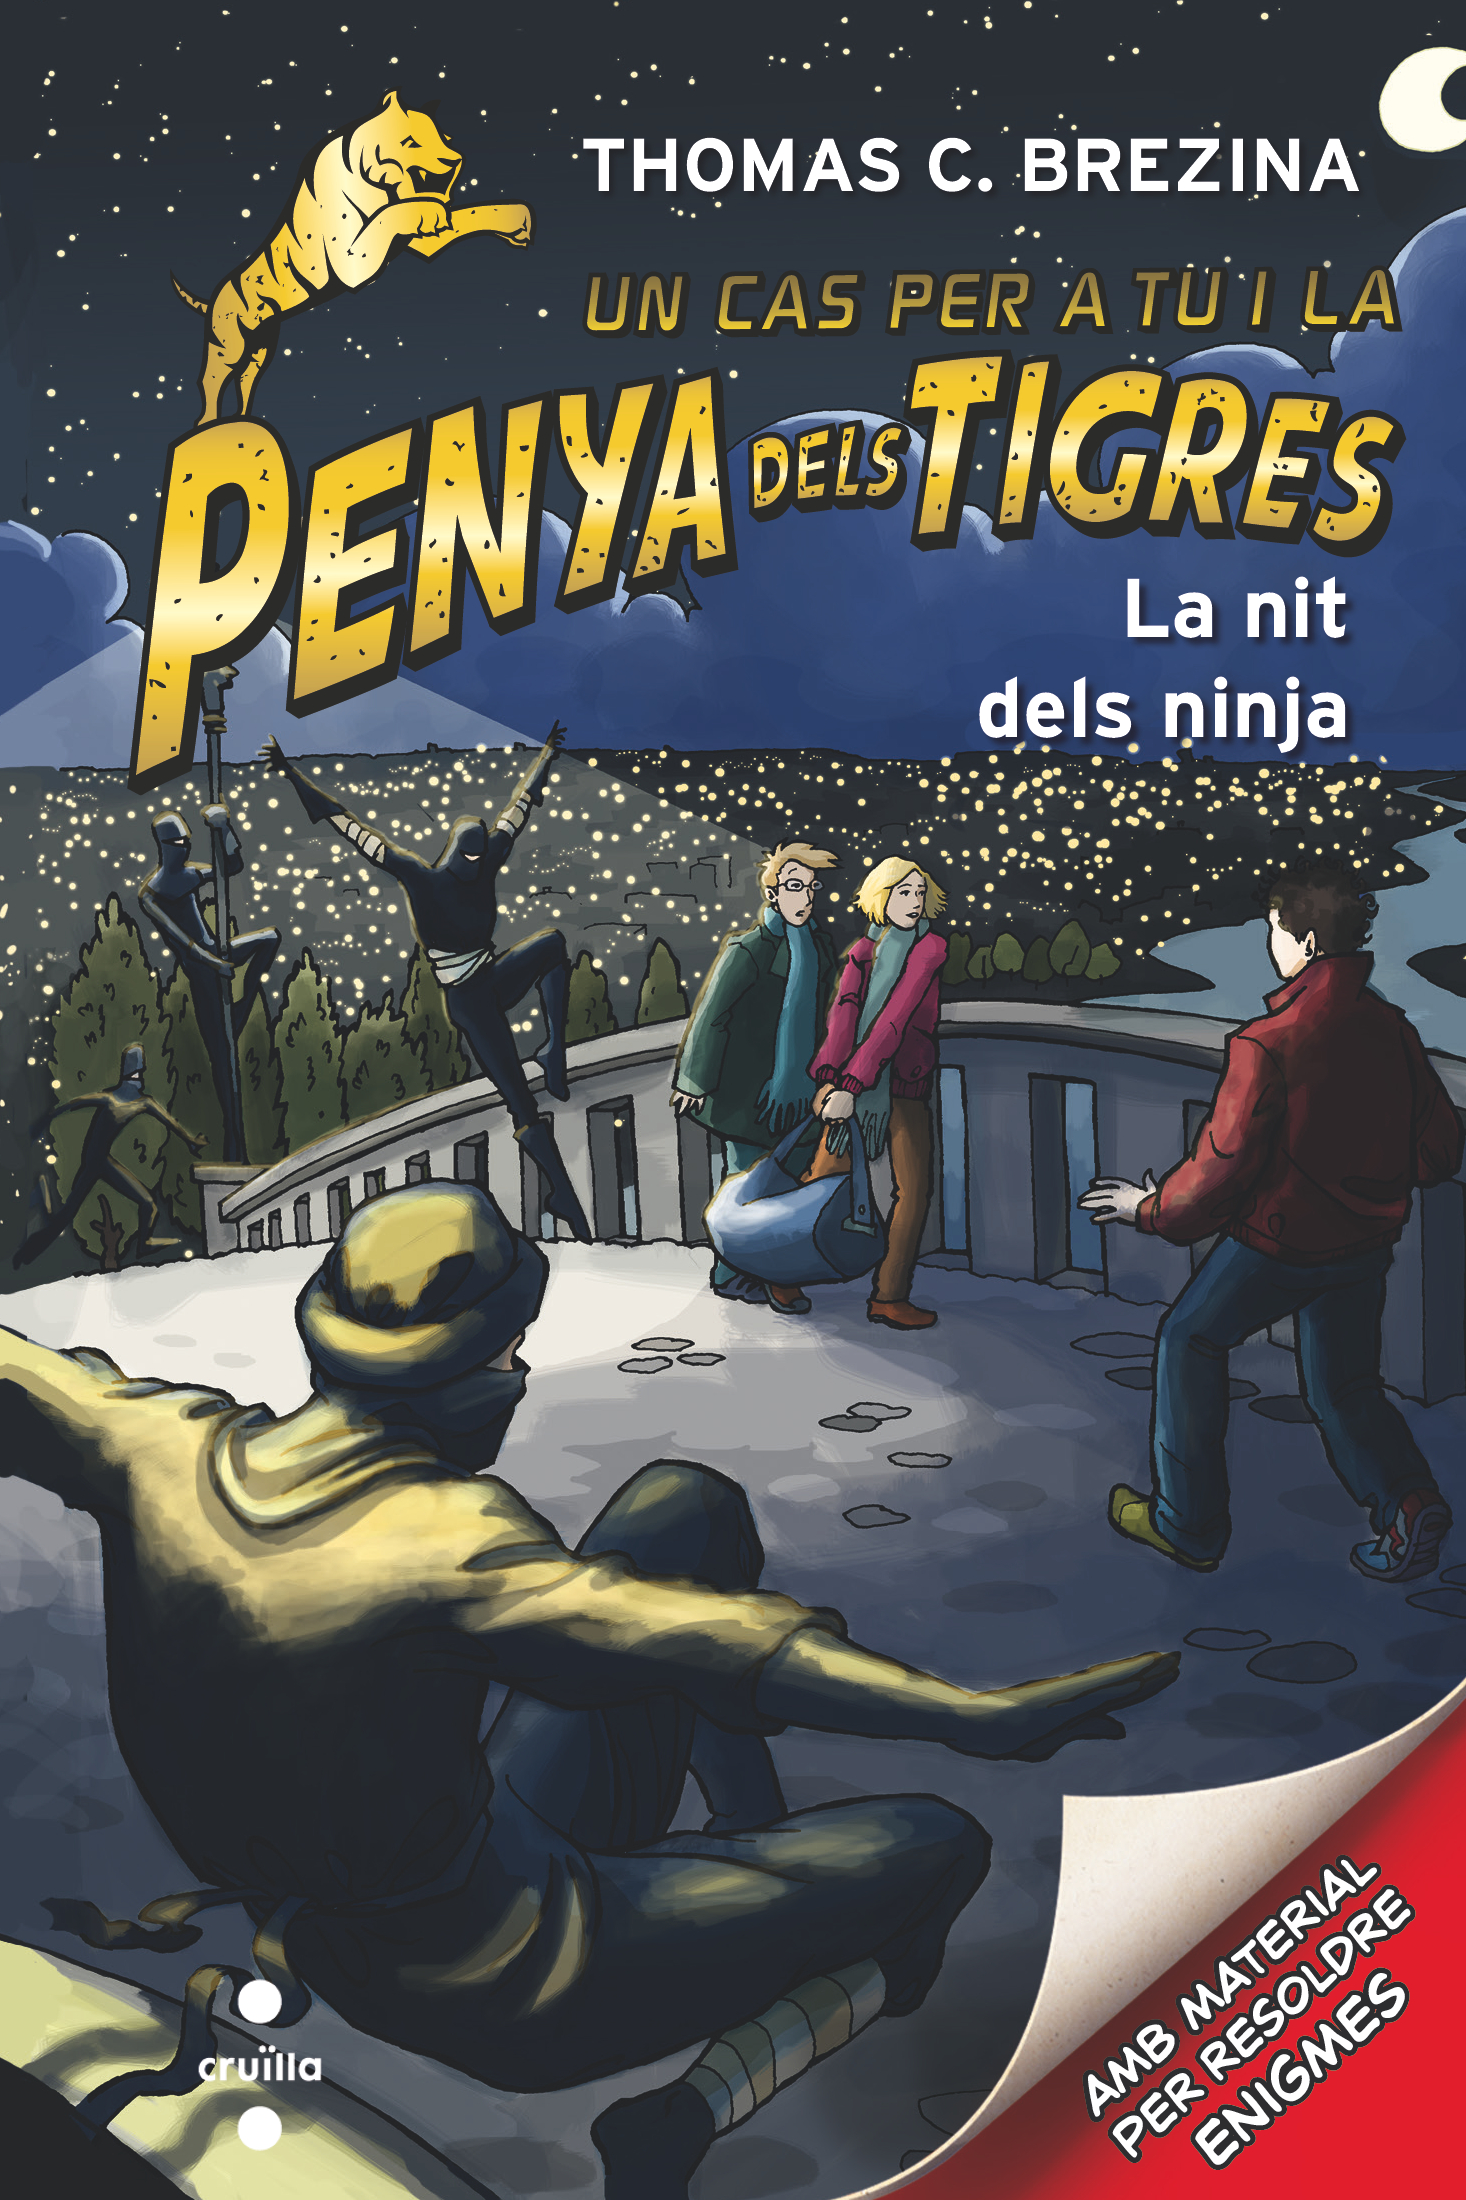 La Penya dels Tigres 6: La nit dels ninja